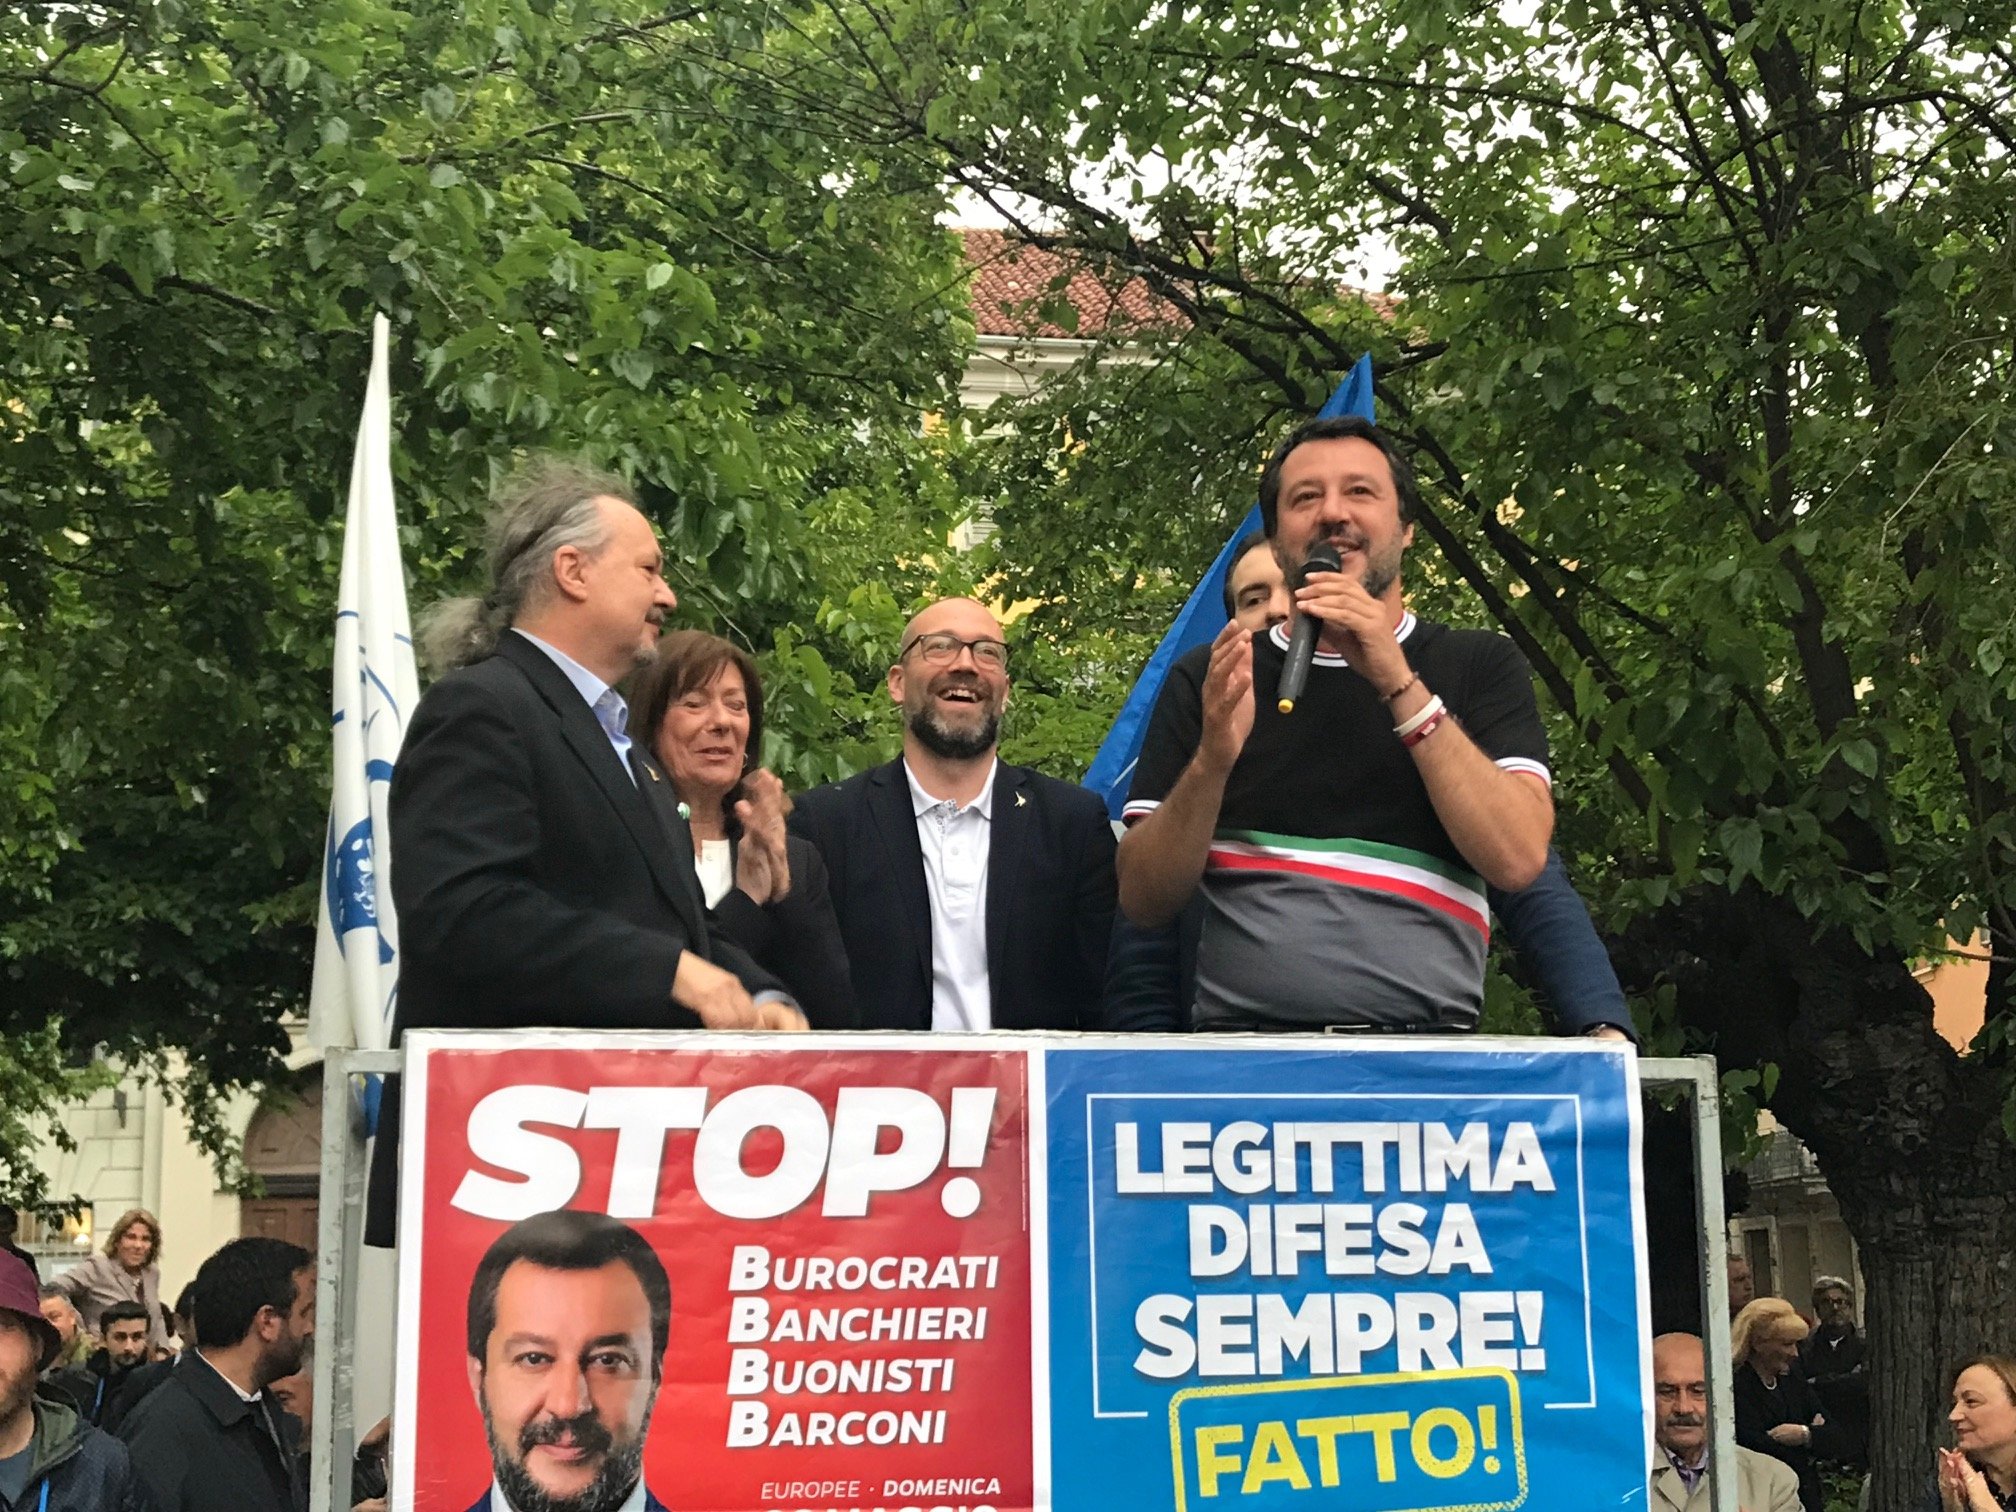 Salvini attacca sul nucleare: “Così si danneggia anche il Piemonte”. Ma il comunicato contiene una gaffe